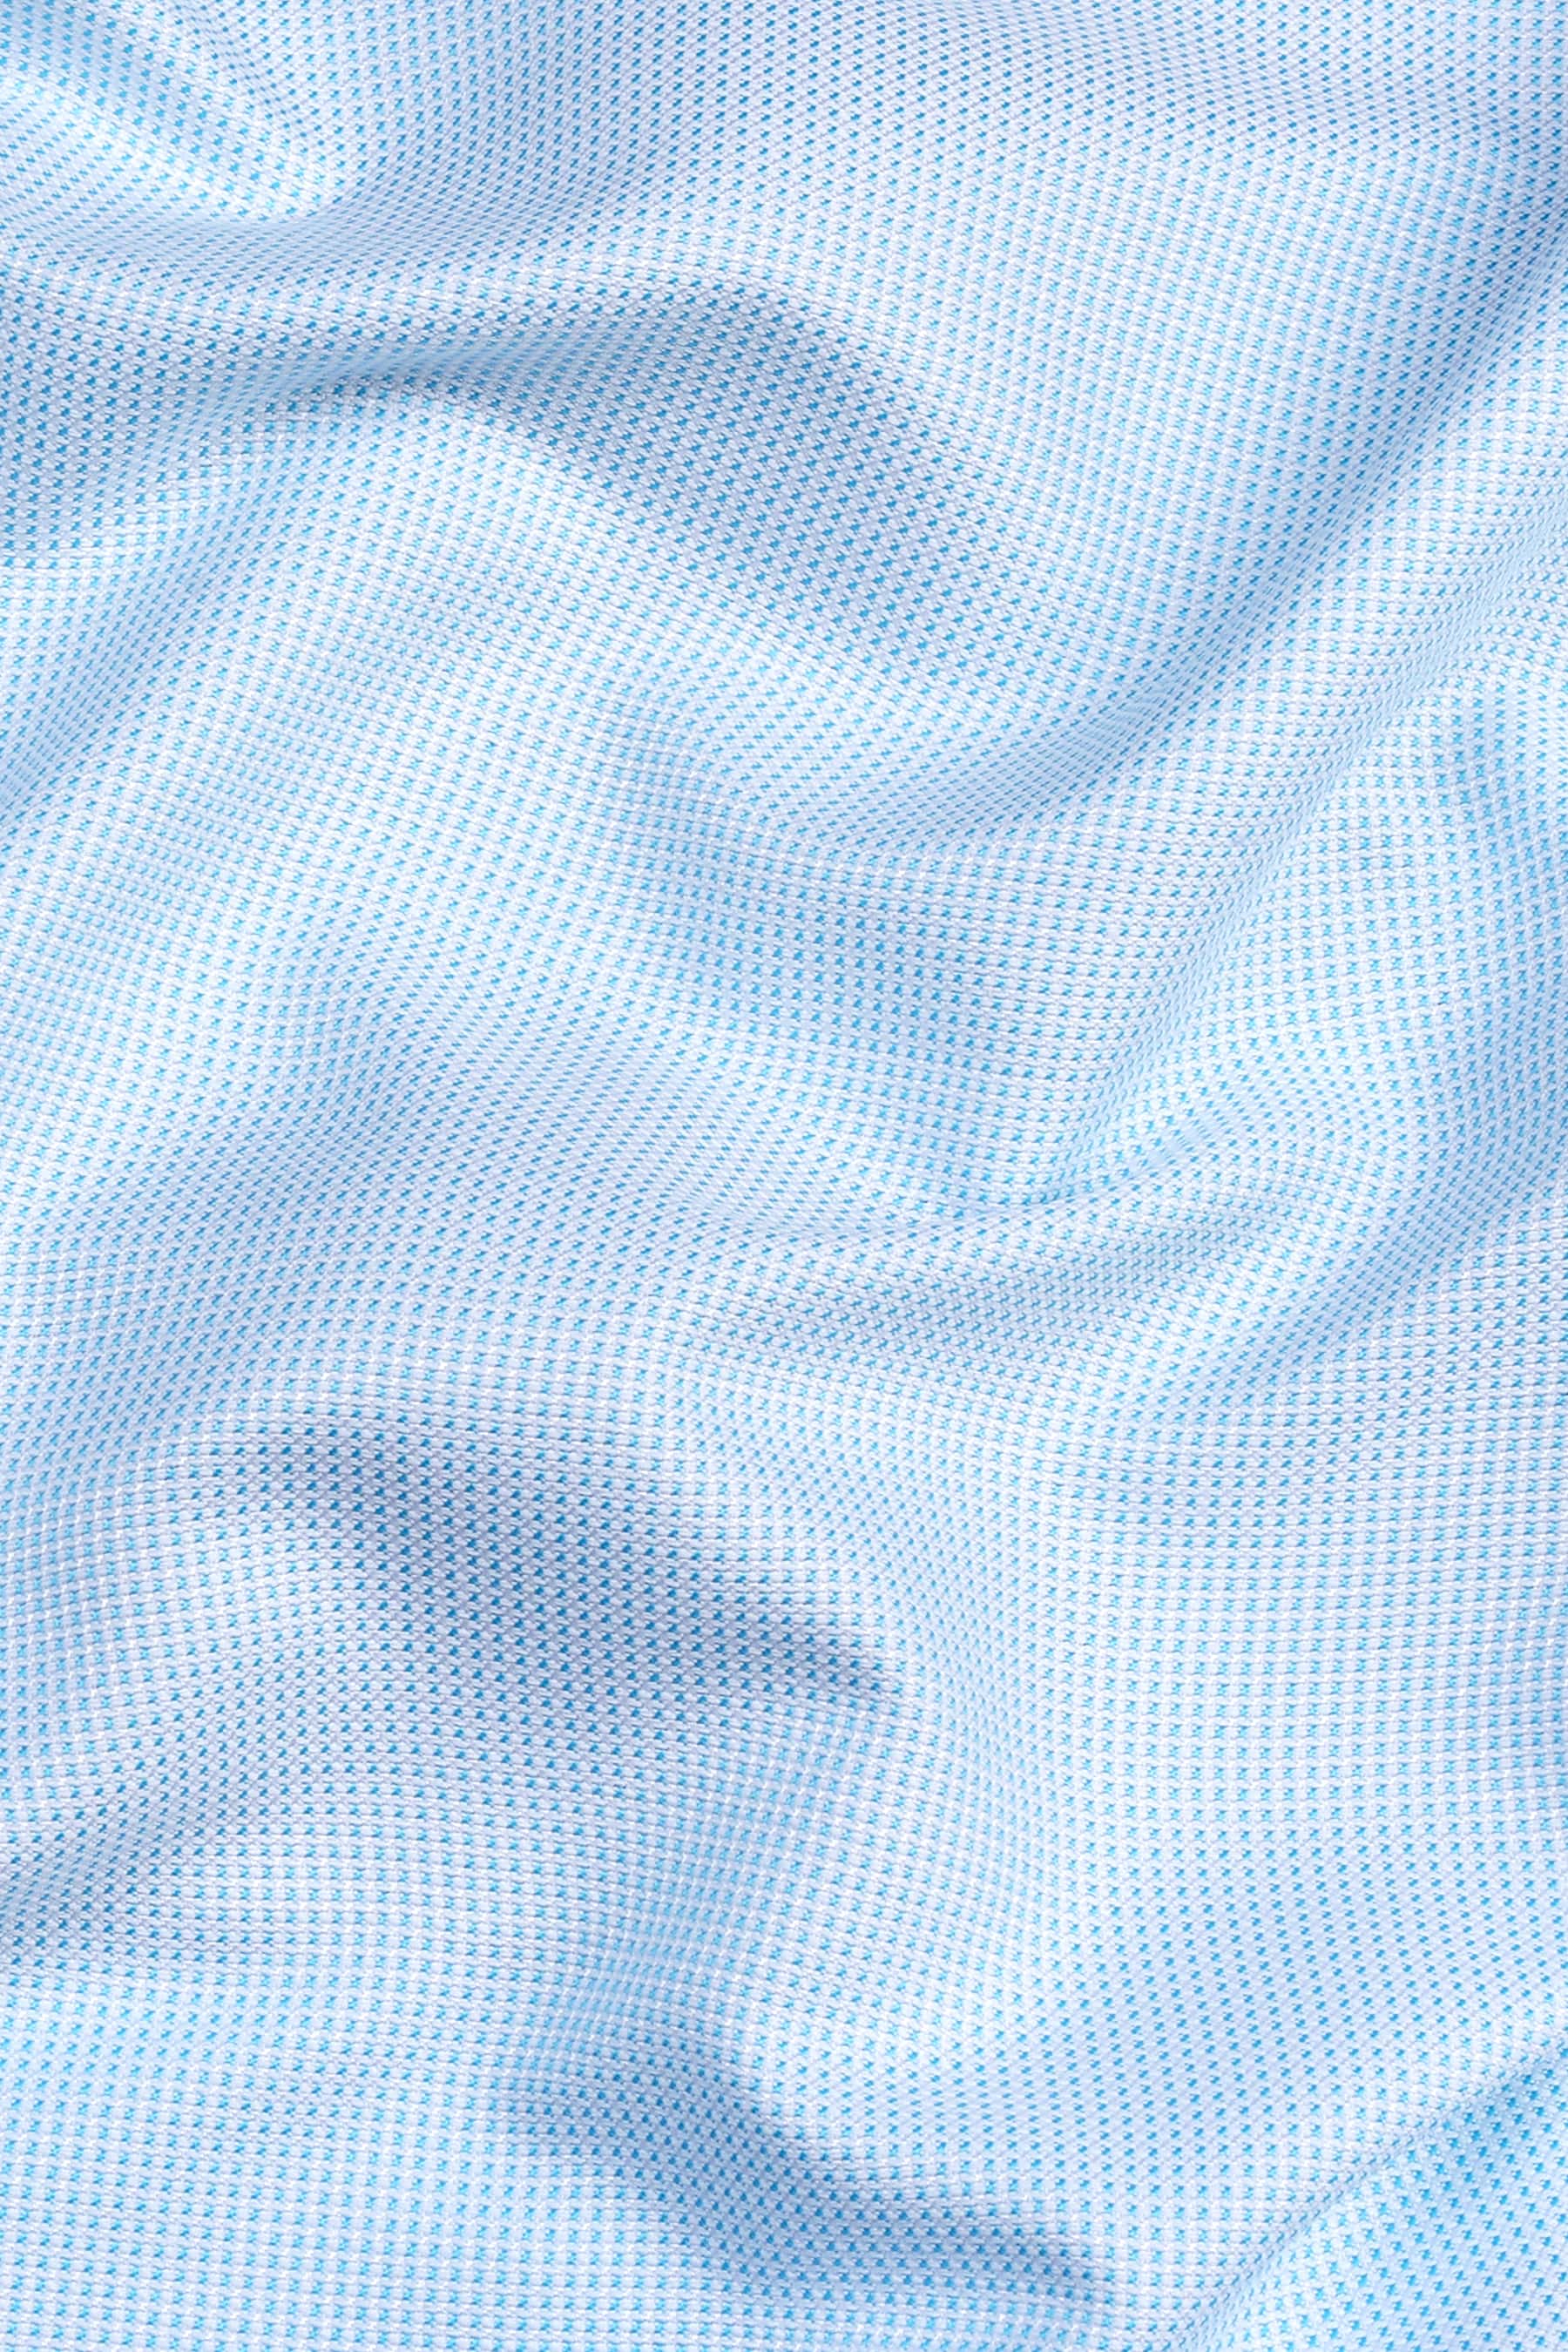 Sky cloud blue dobby texture shirt